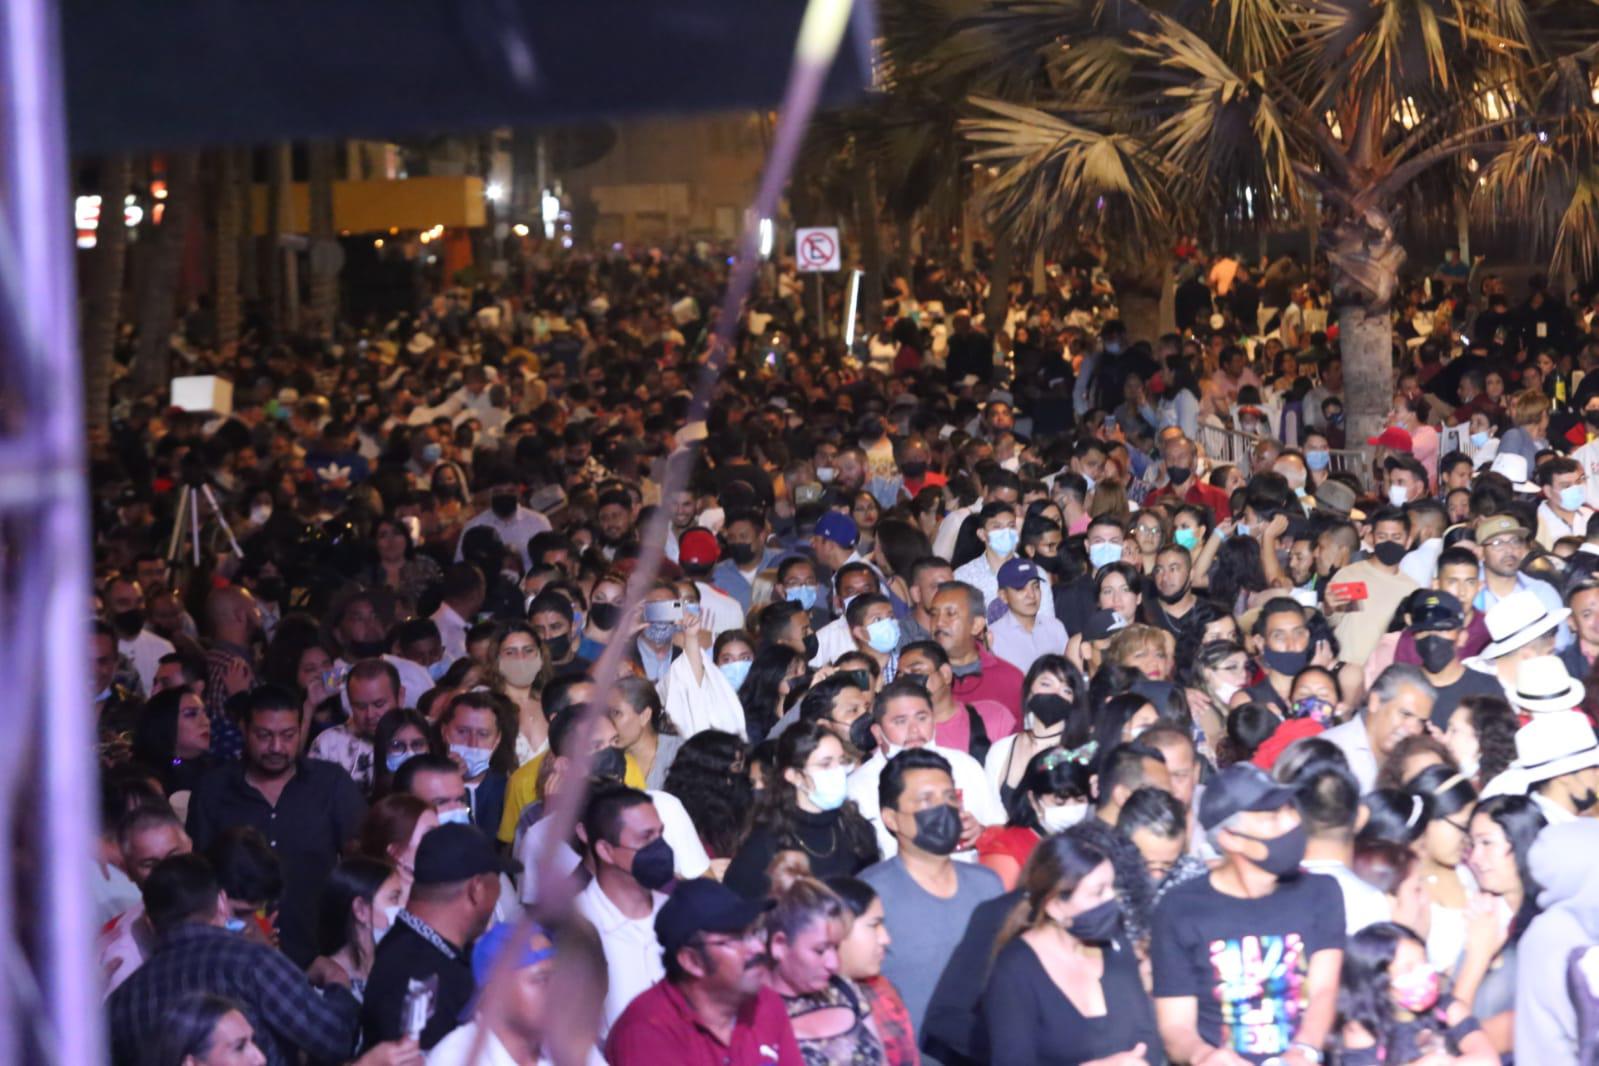 $!Pese al alza de contagios de Covid, abarrotan Olas Altas en evento por Año Nuevo en Mazatlán